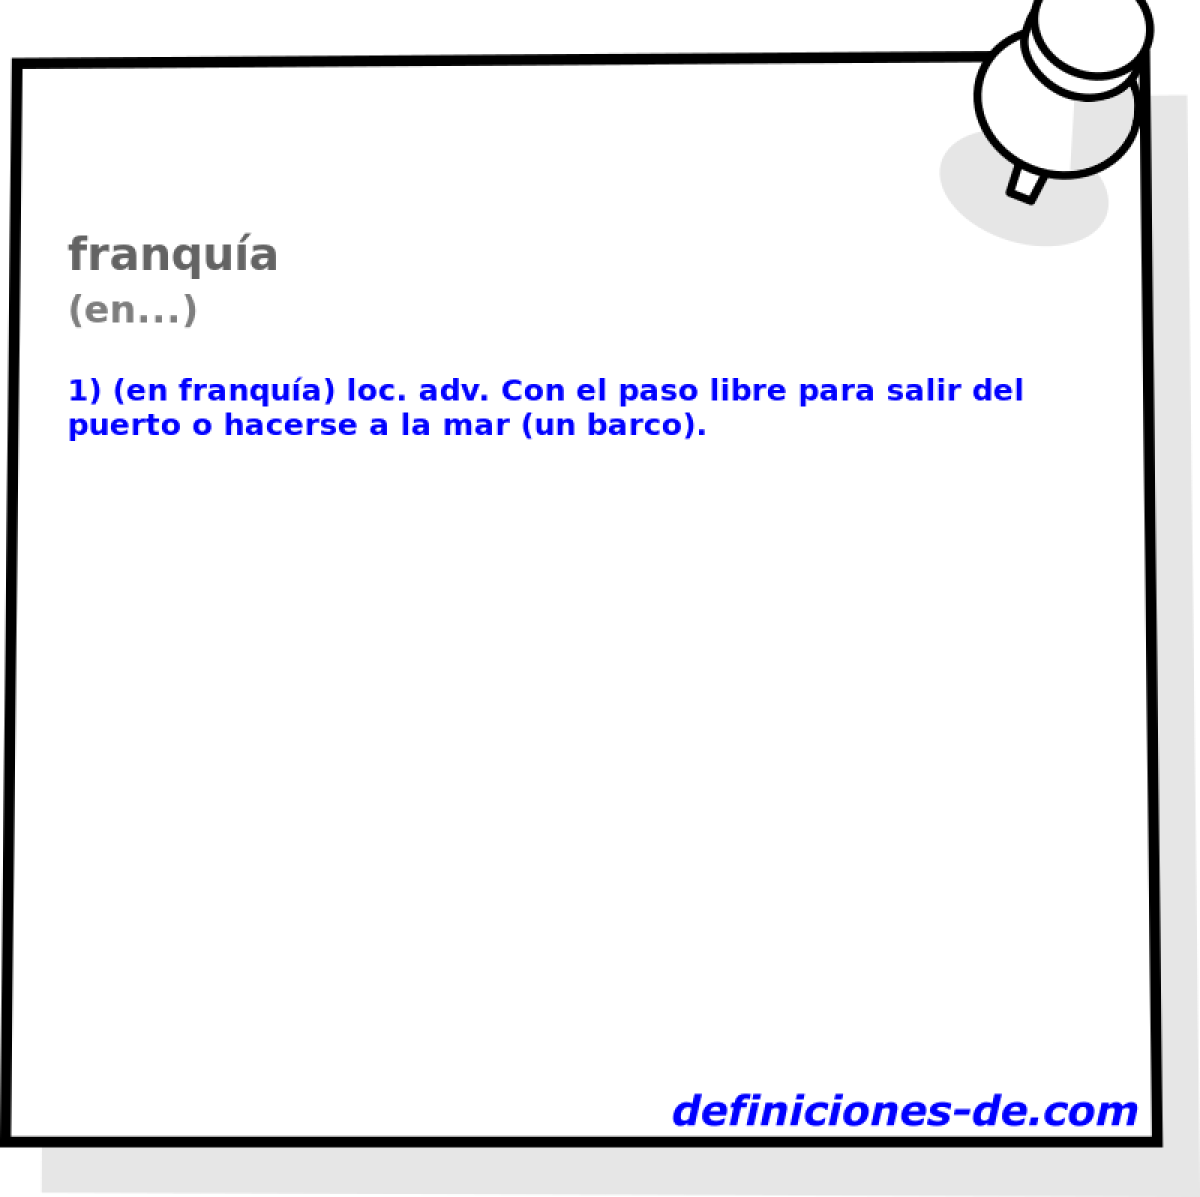 franqua (en...)